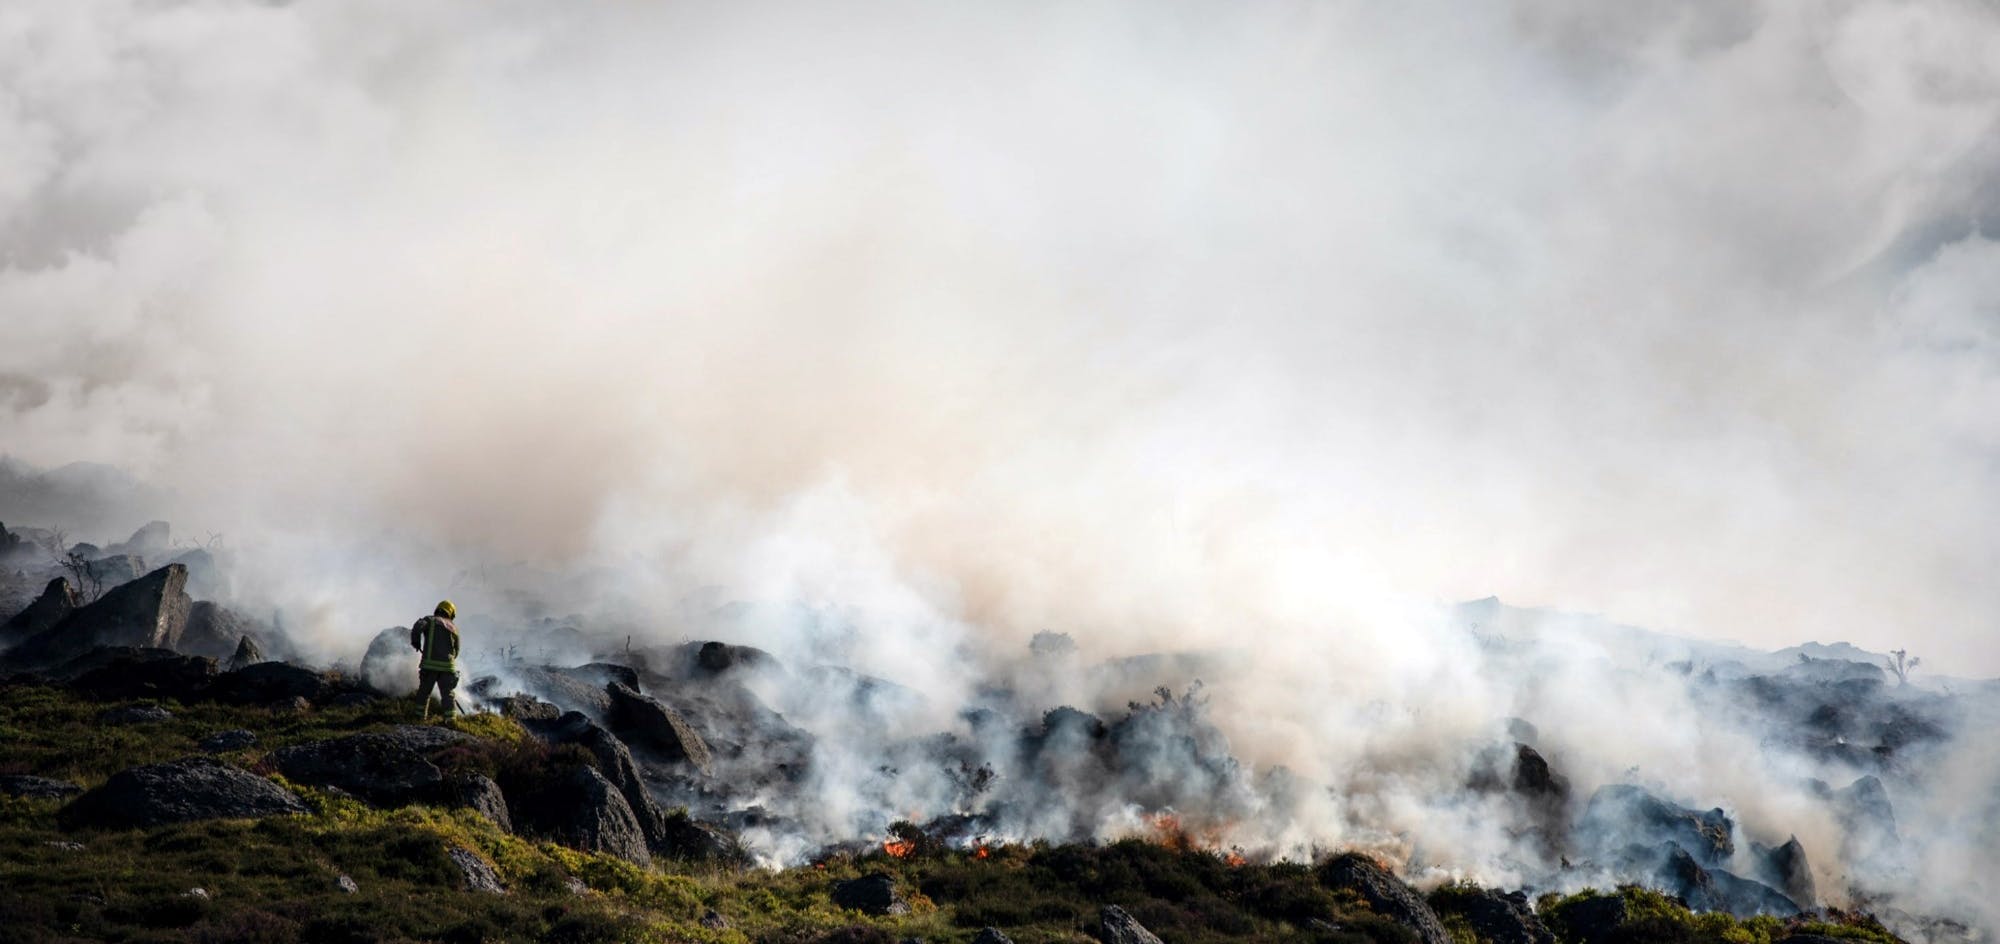 Fire fighter standing on burning hillside